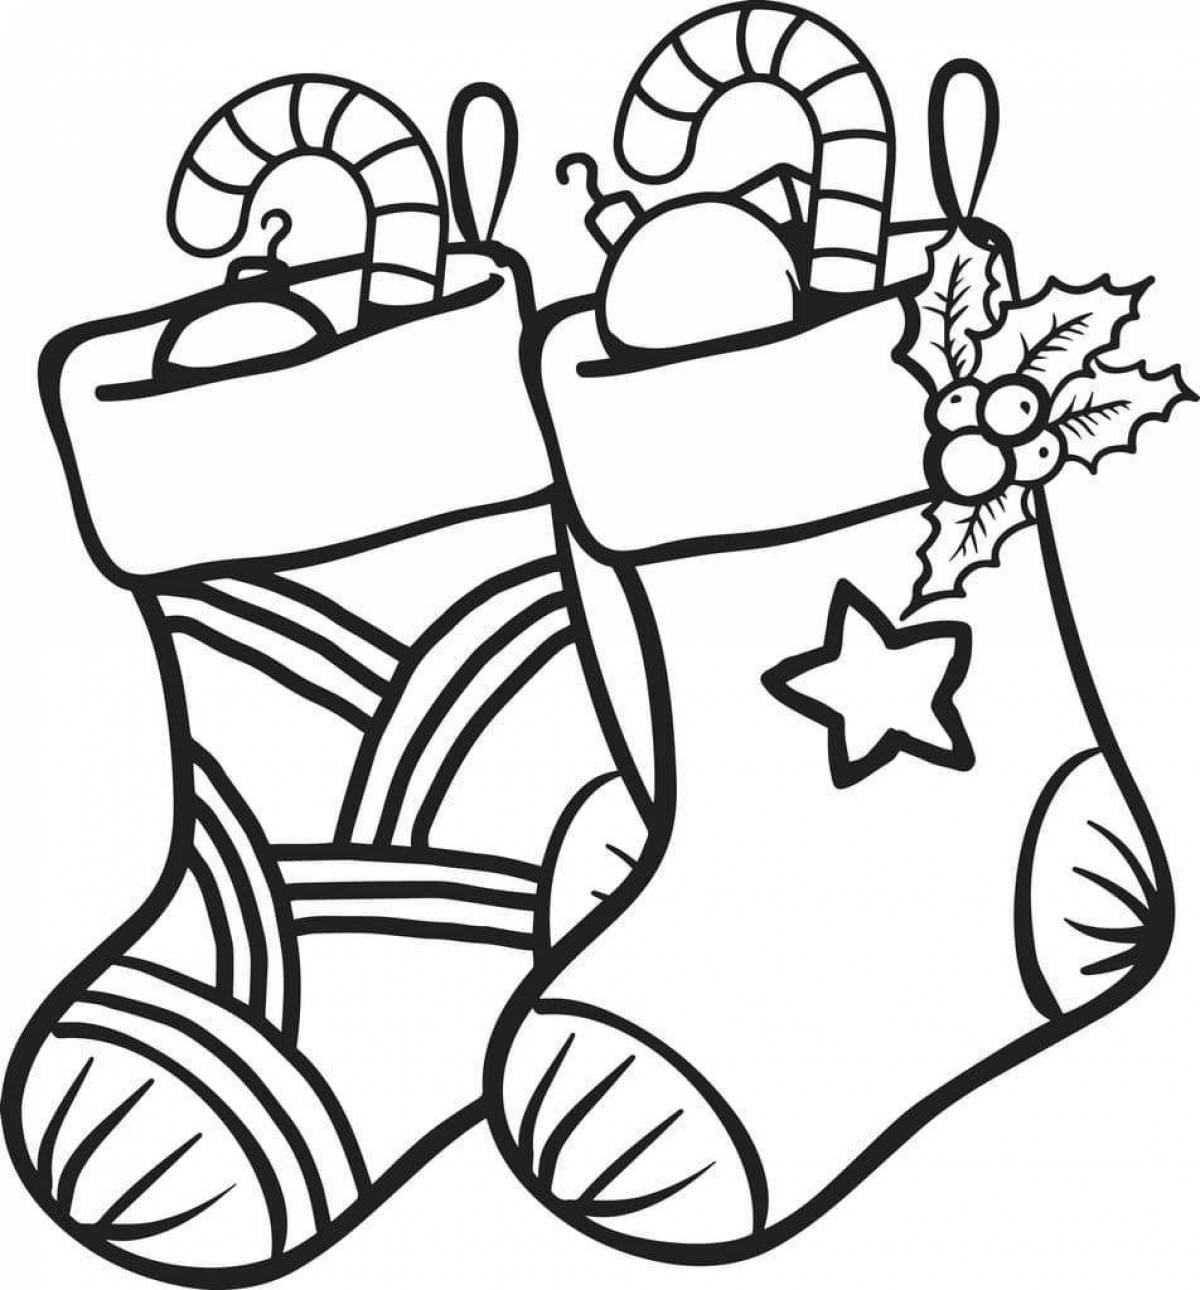 Joyful Christmas boot coloring